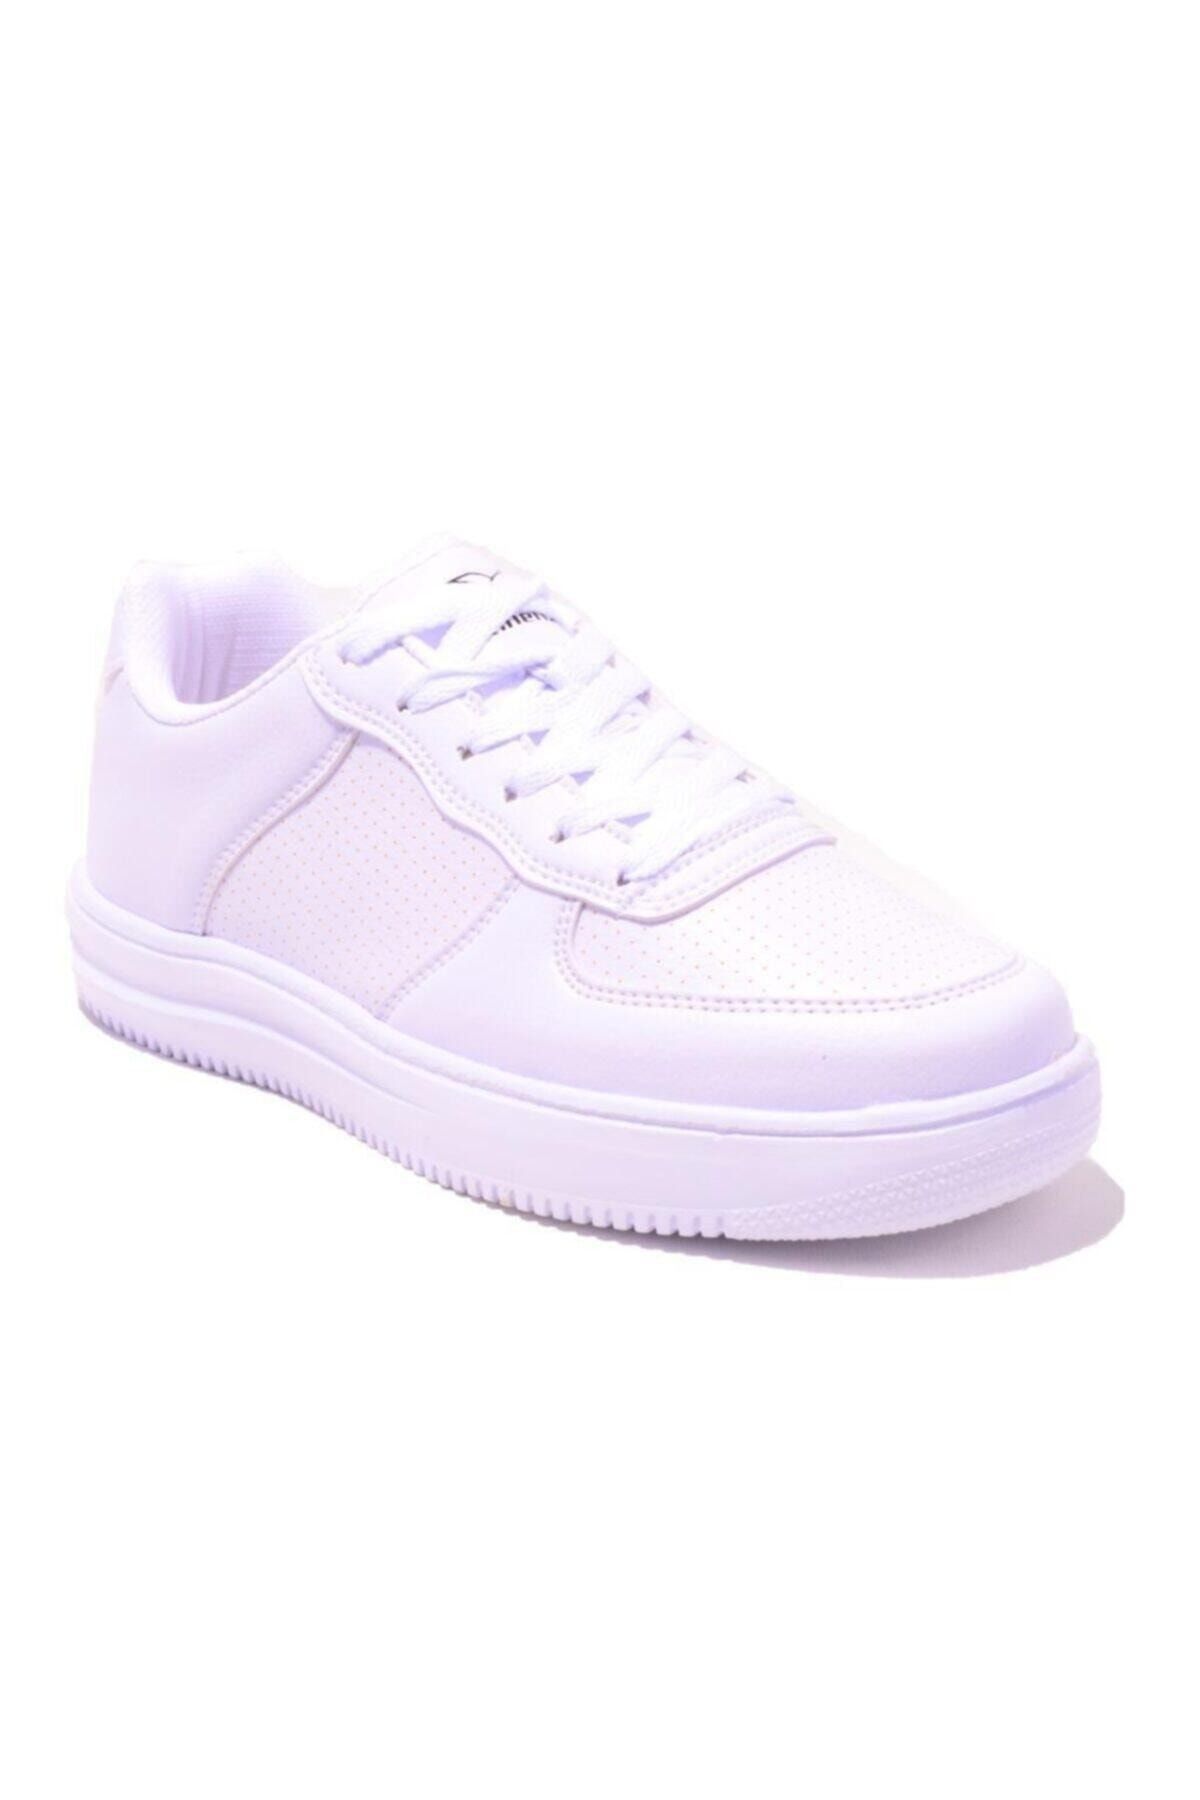 Kinetix ABELLA W Beyaz Kadın Sneaker Ayakkabı 100483852